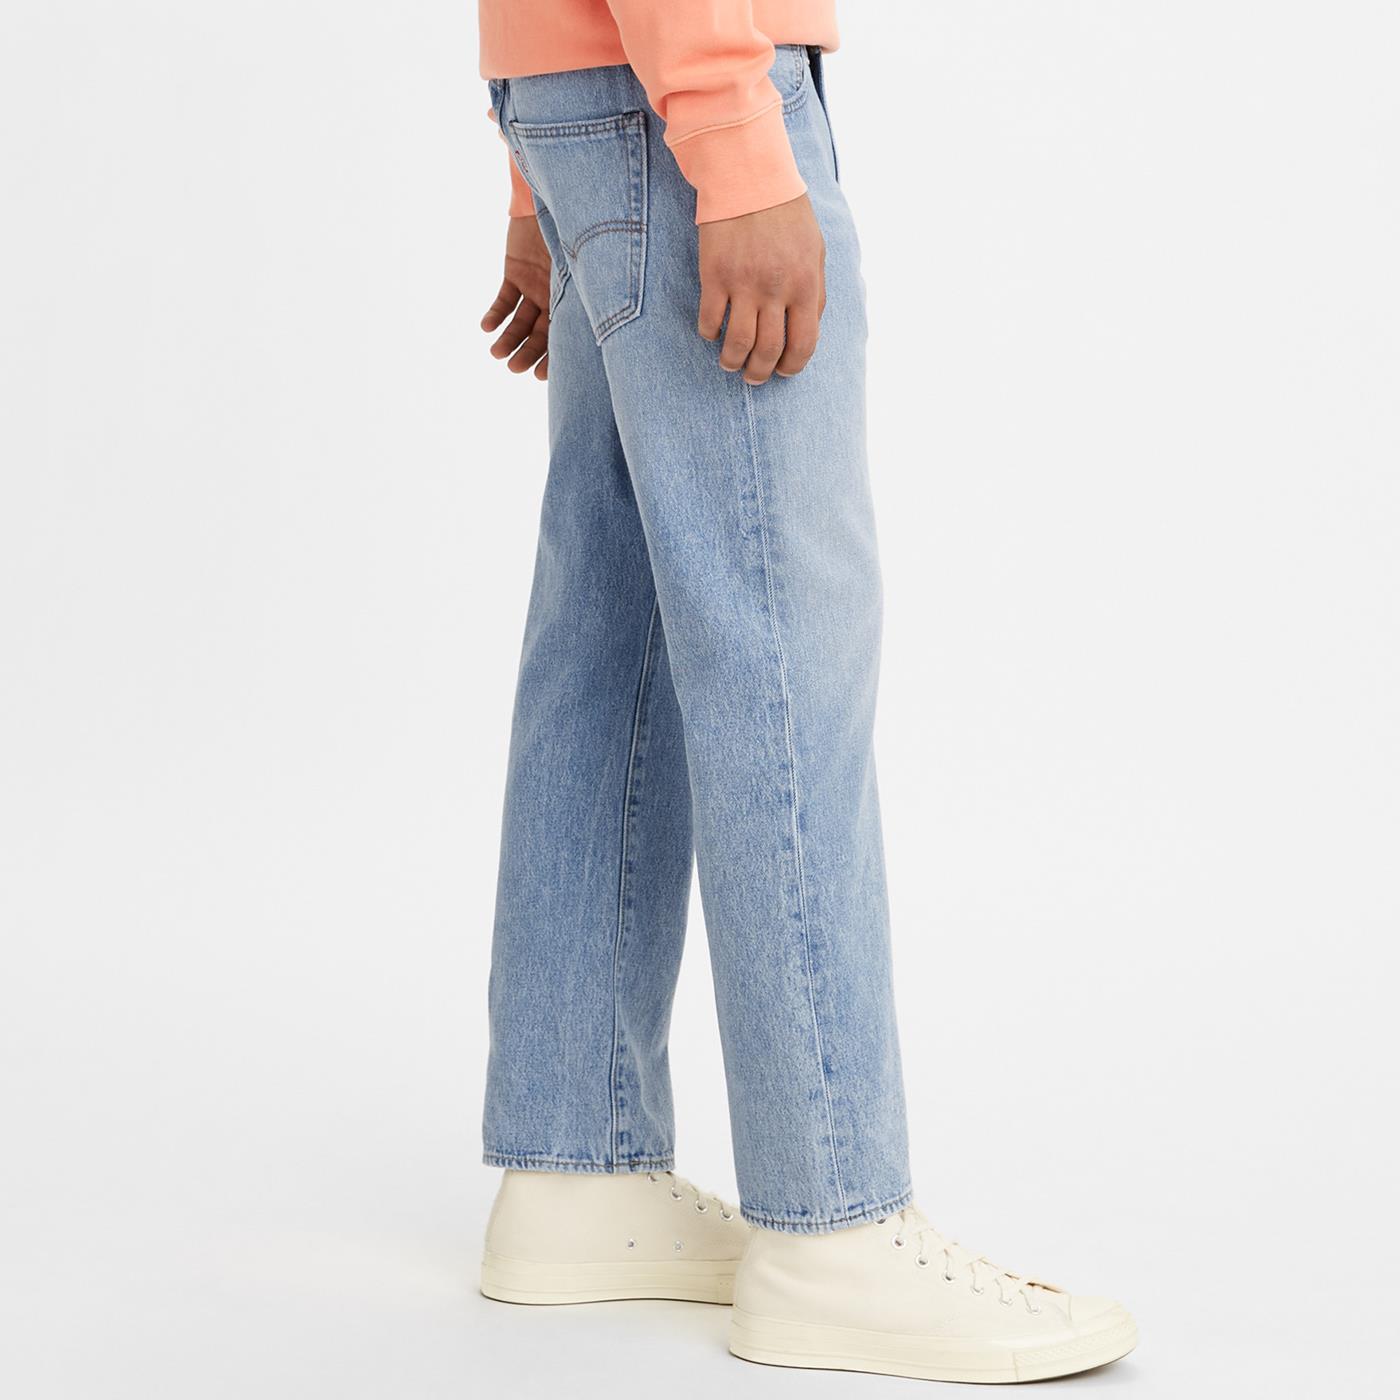 Pants Levis 551Z Authentic Straight Crop Jeans Blue for Man | A0927-0005 |  